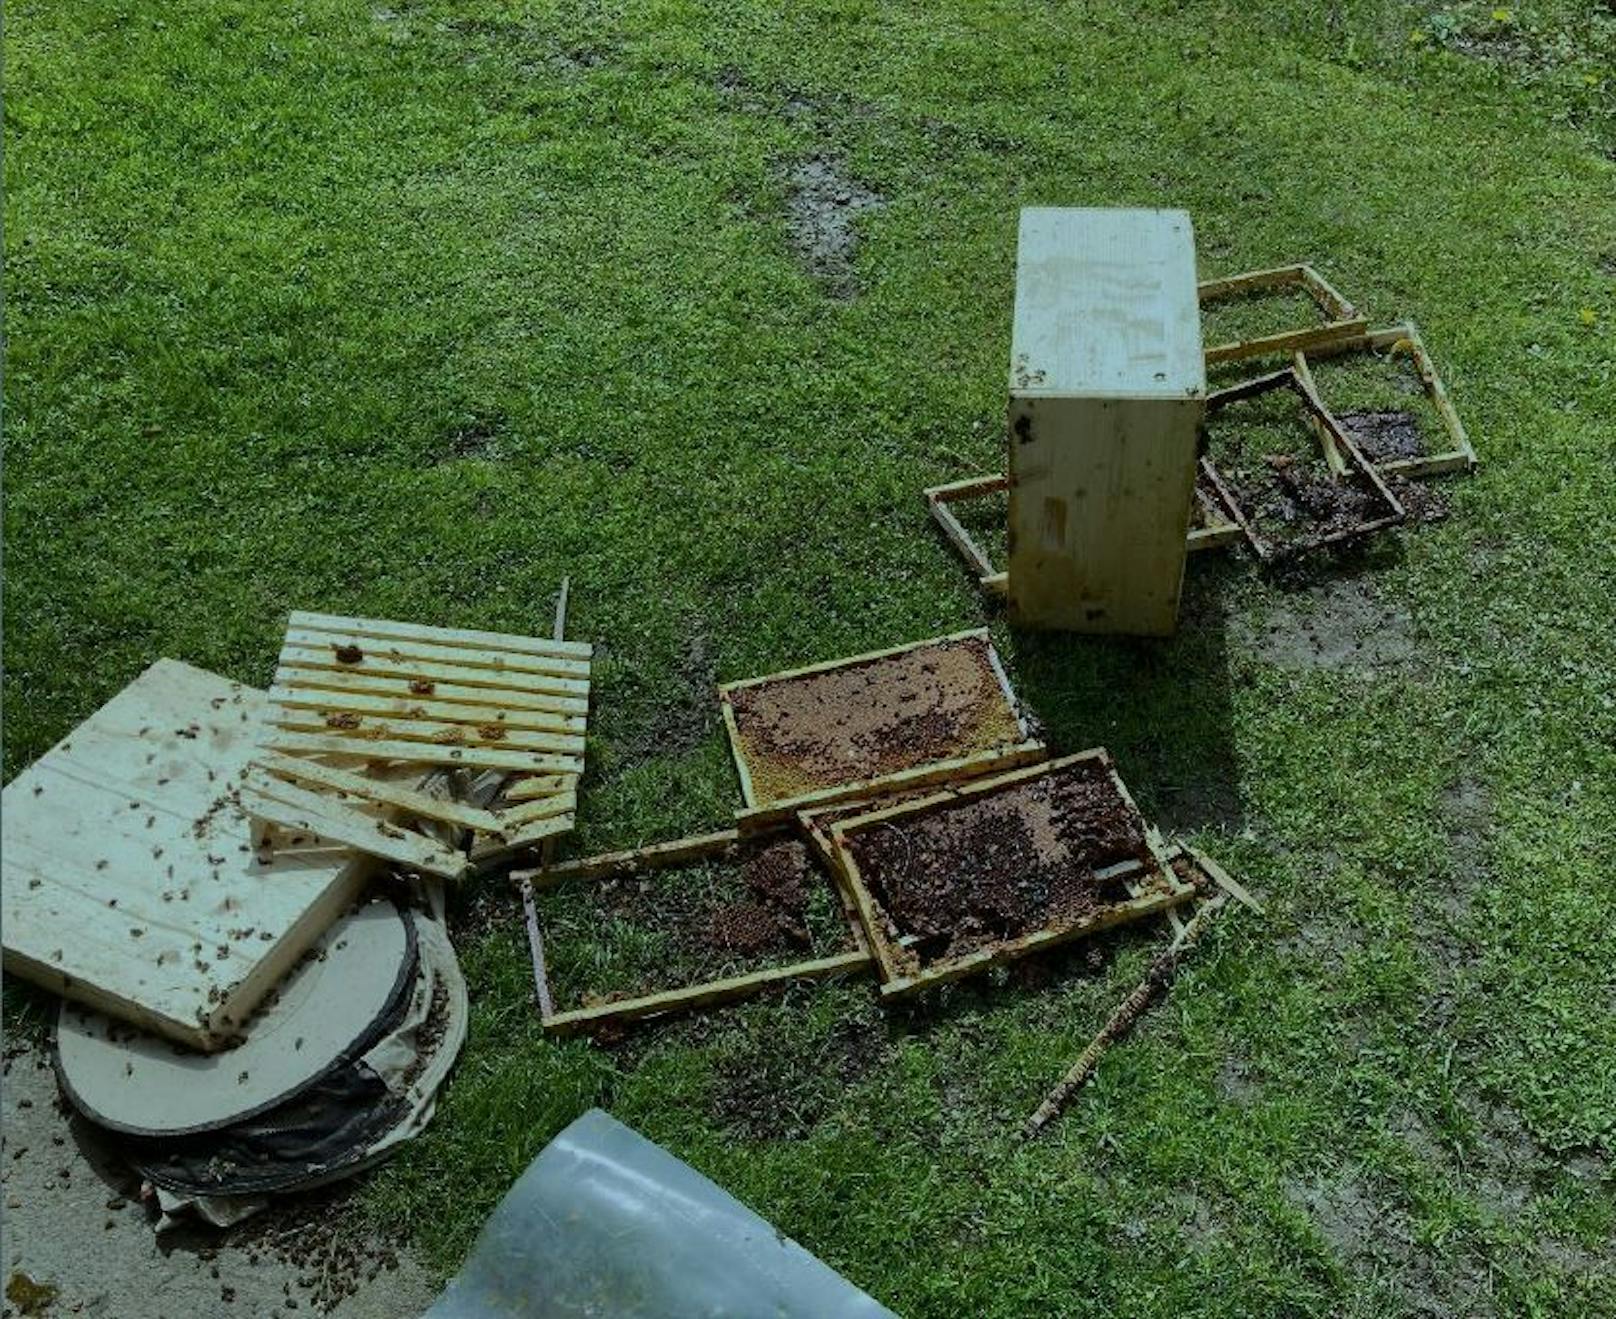 Bär plündert Bienenstock – Hunderte Euro Schaden